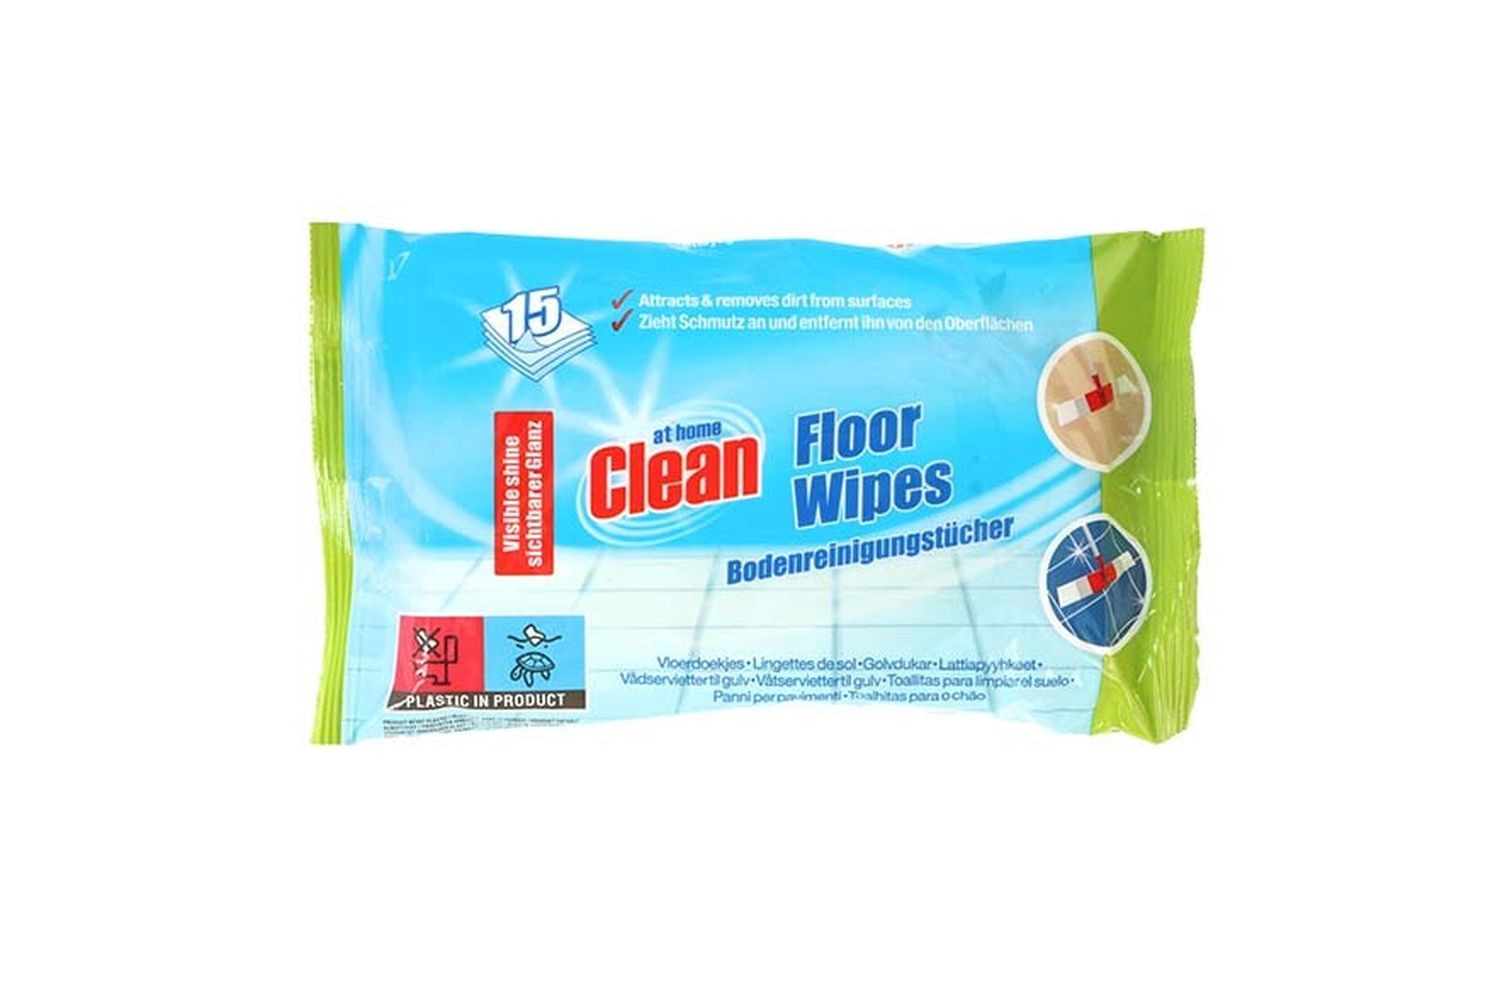 Lingettes nettoyantes pour sols At Home Clean - Lingettes pour sols At Home  Clean (12 paquets), VavaBid